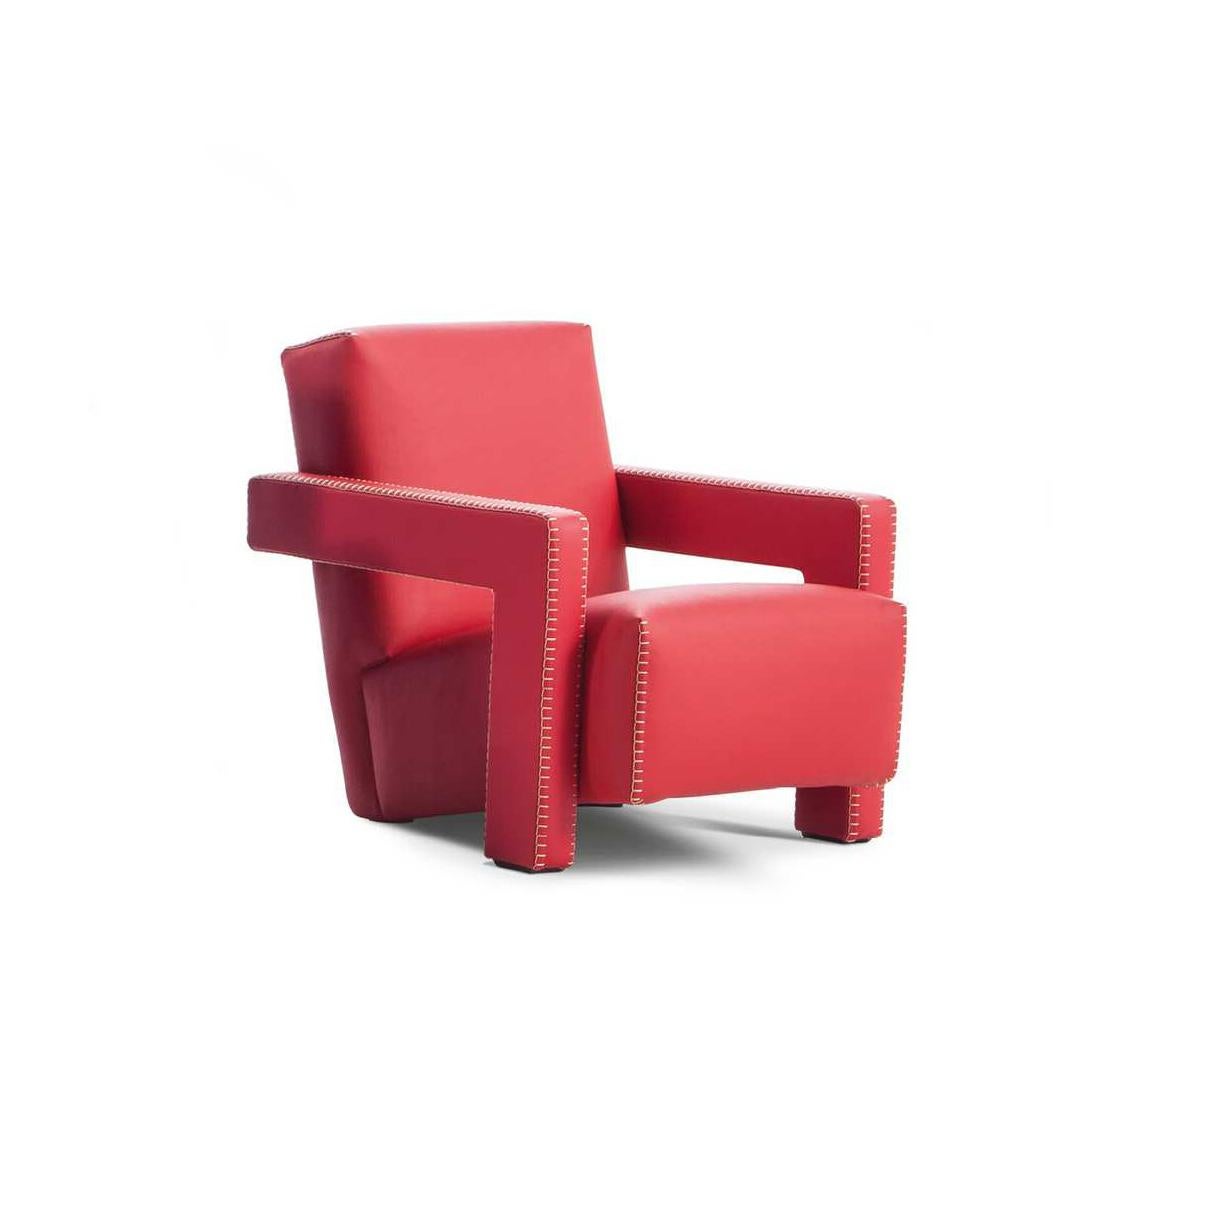 Sessel, entworfen von Gerrit Thomas Rietveld im Jahr 1935. Neu aufgelegt im Jahr 2015.

Baby-Version.

Hergestellt von Cassina in Italien.

Gerrit T. Rietveld entwickelte den Entwurf für den Utrecht-Sessel 1935, als er für das Kaufhaus Metz & Co. in